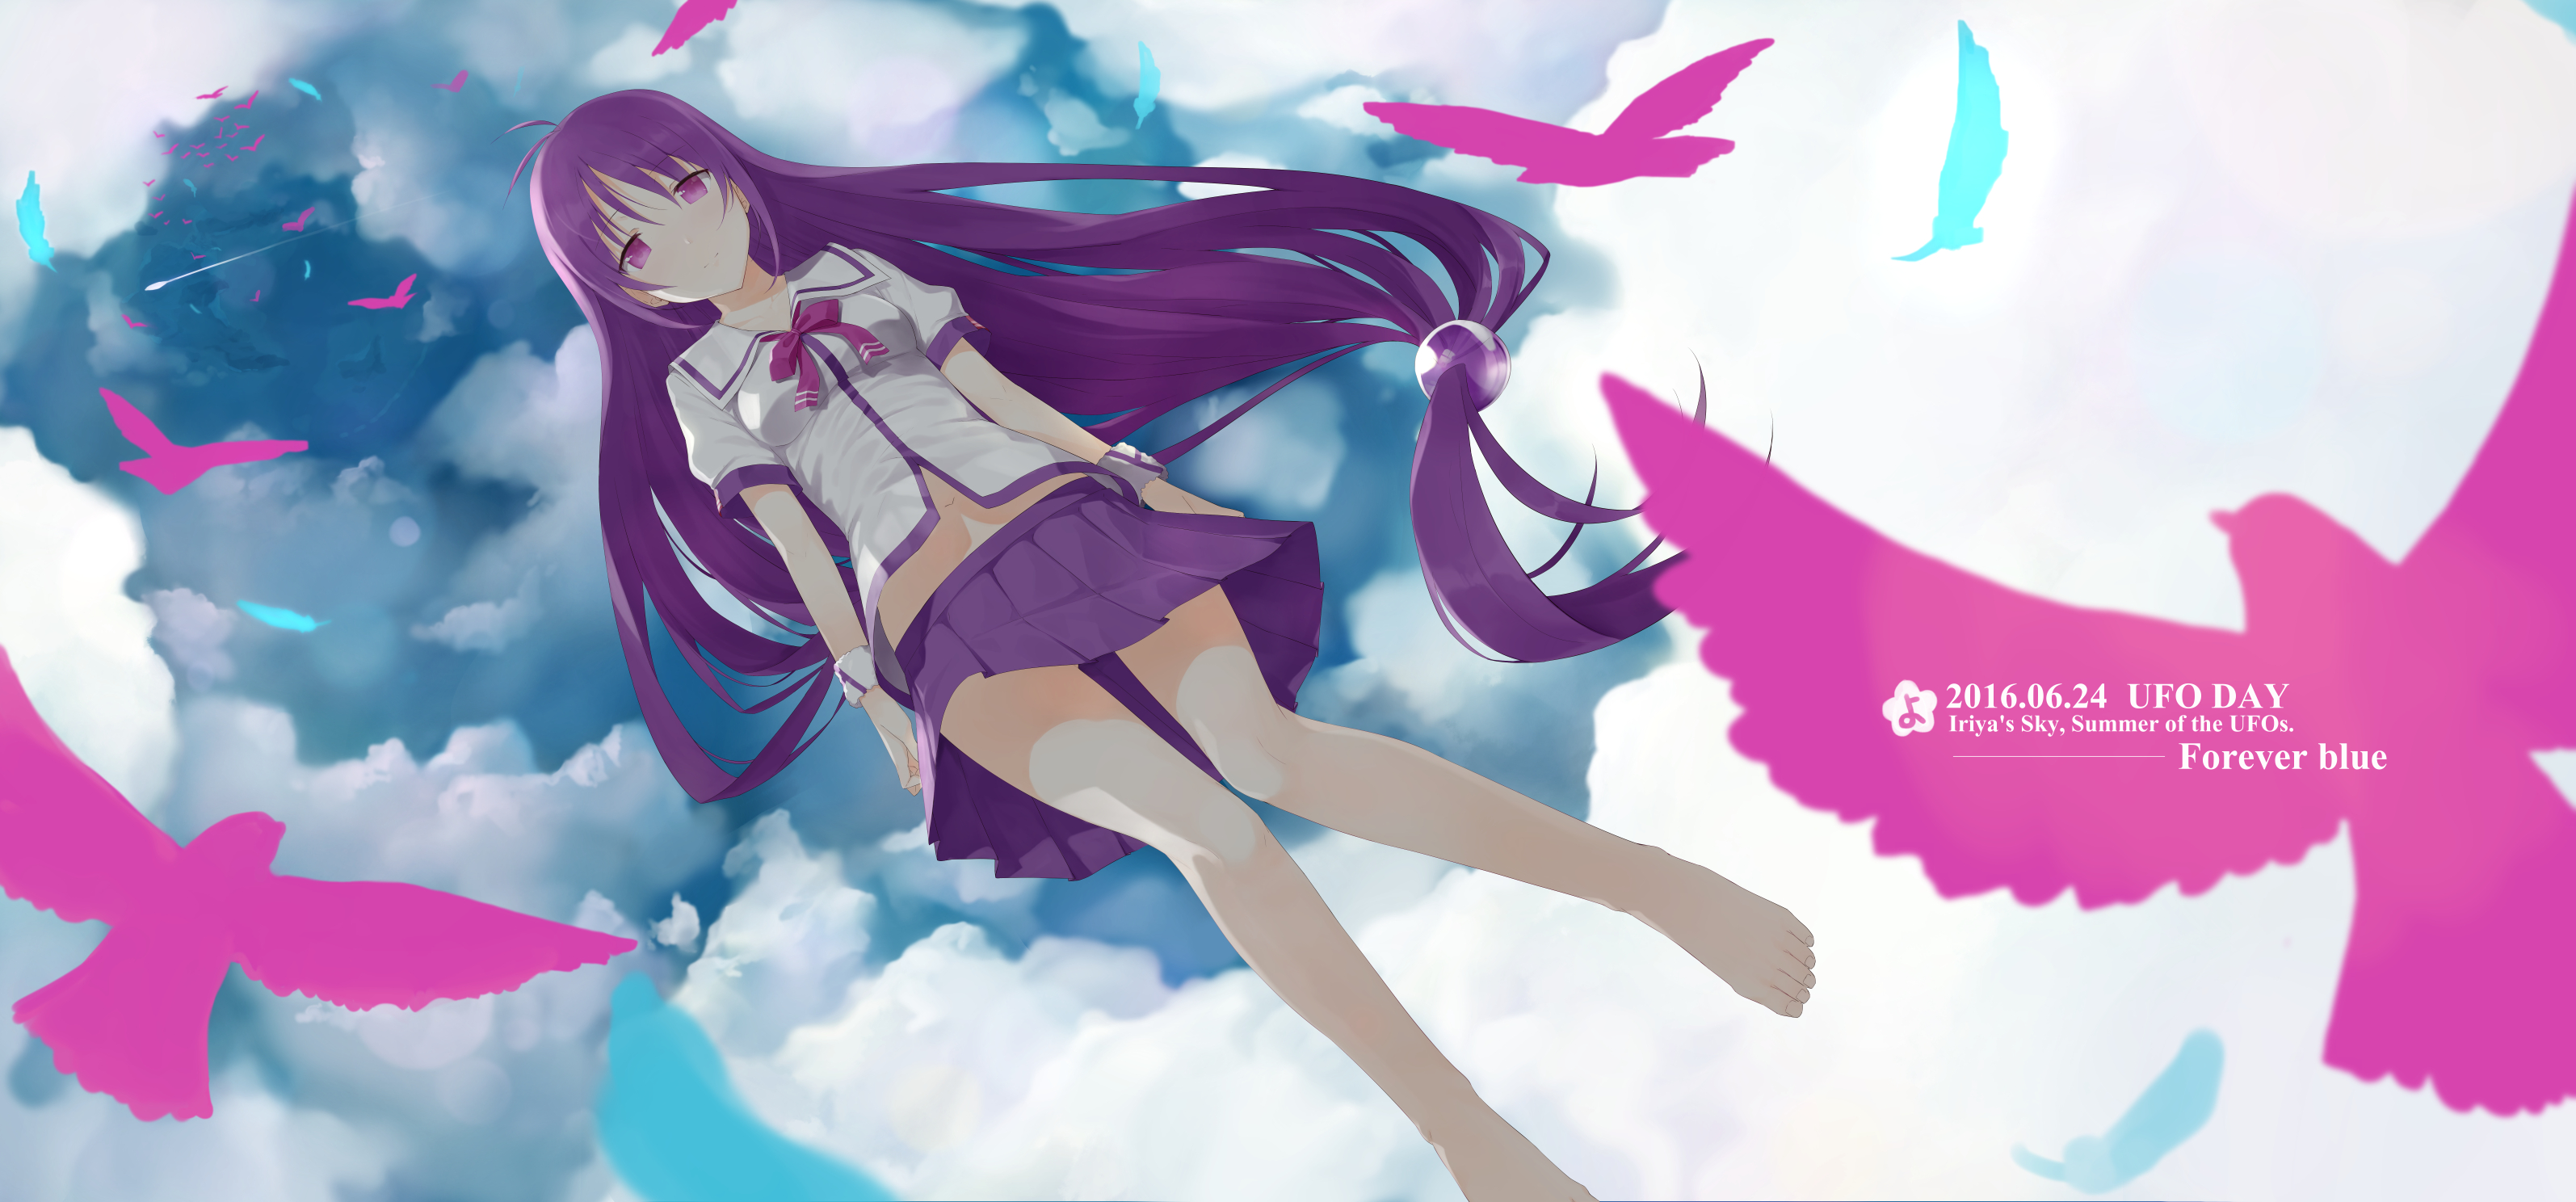 Anime Iriya no Sora, UFO no Natsu HD Wallpaper | Background Image